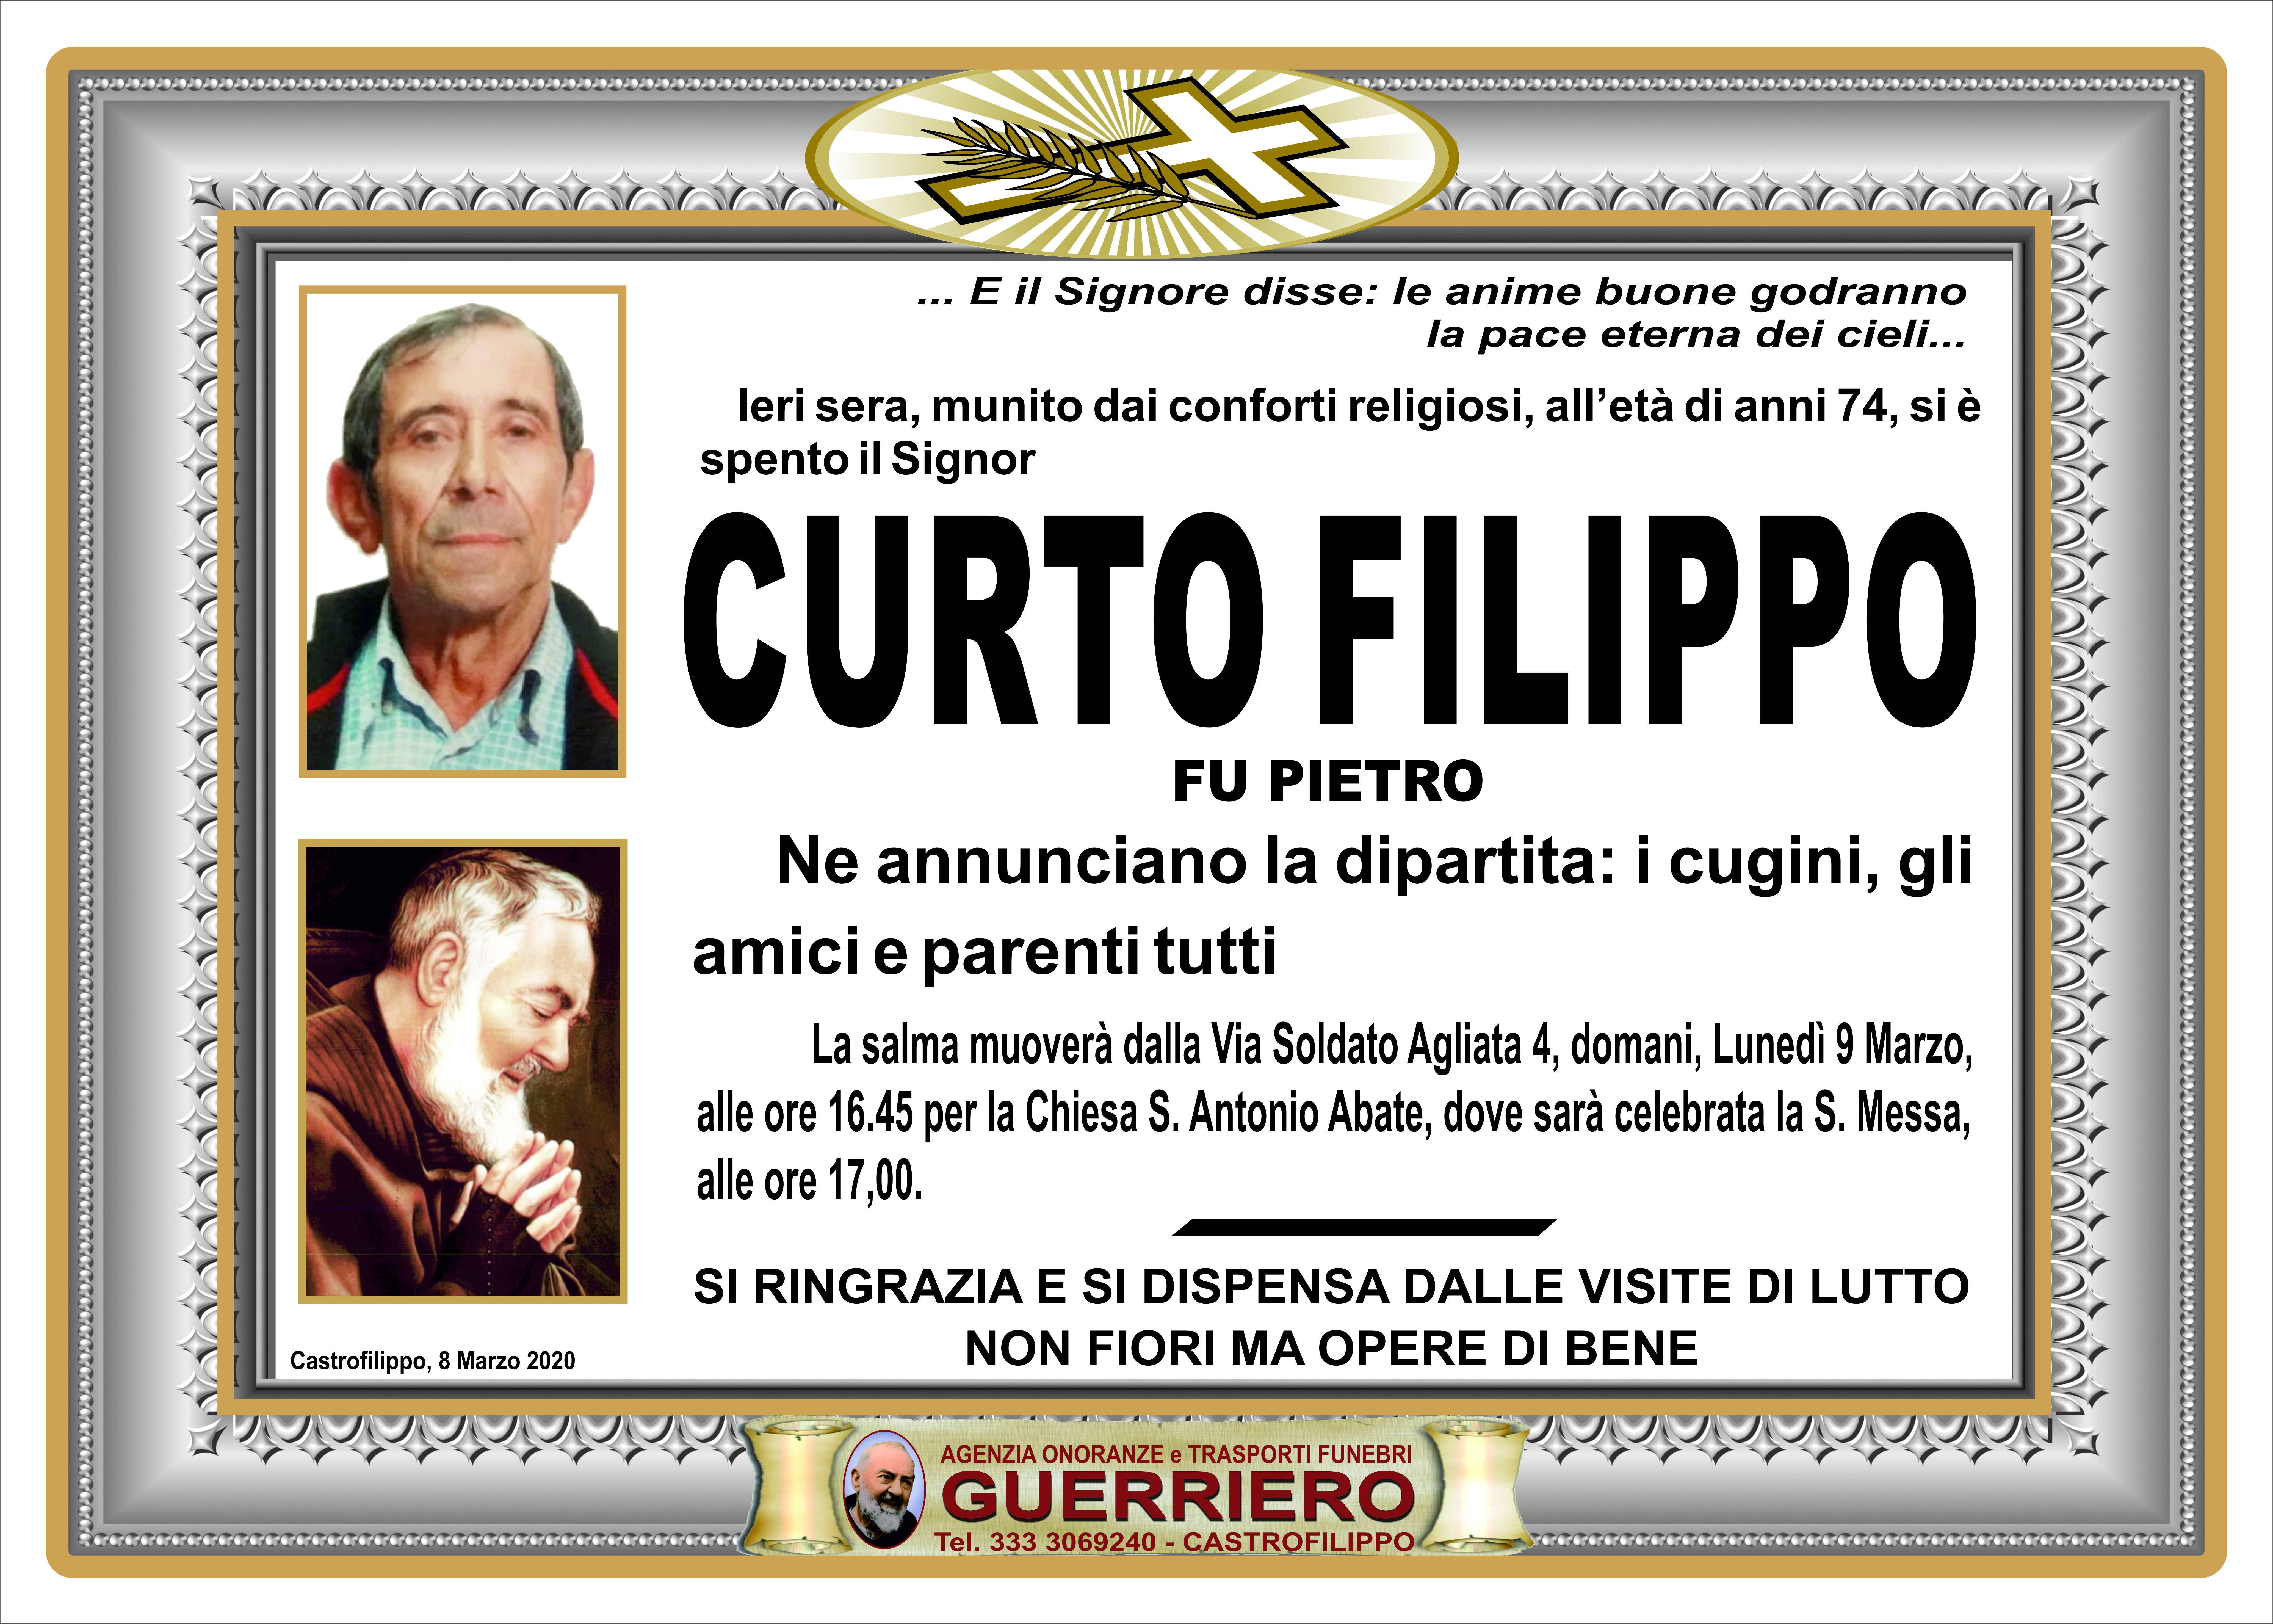 Filippo Curto